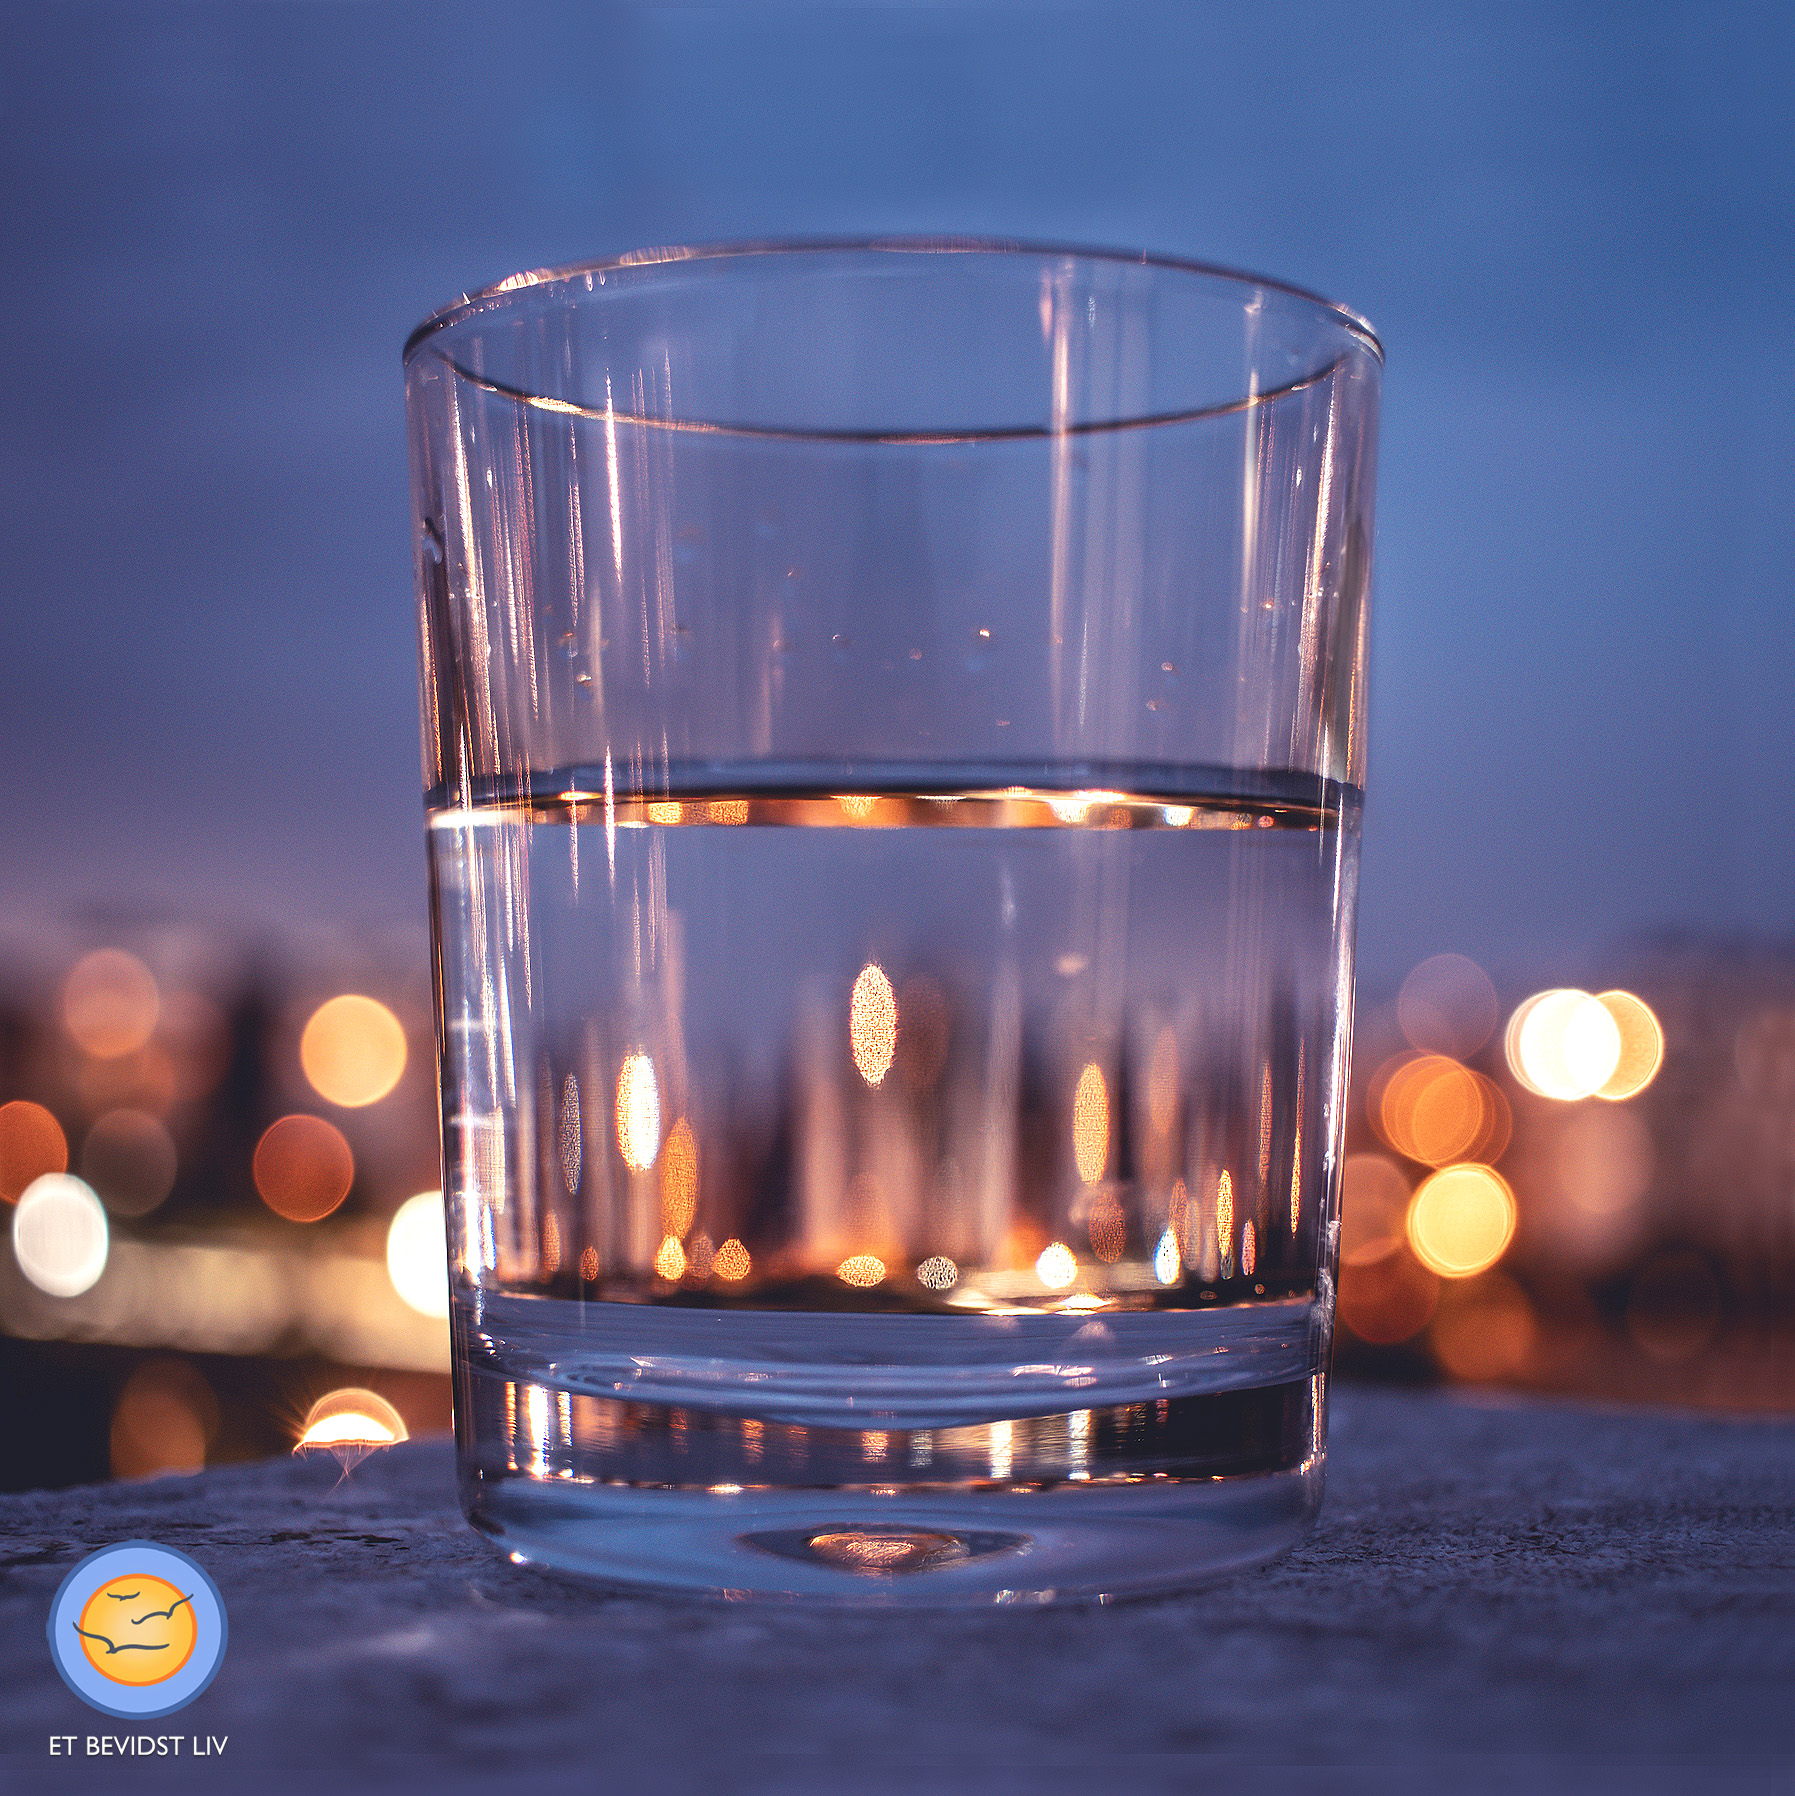 Foto af et halvt fyldt (eller halvt tomt) glas ved nattetide, med refleksioner af byens lys.